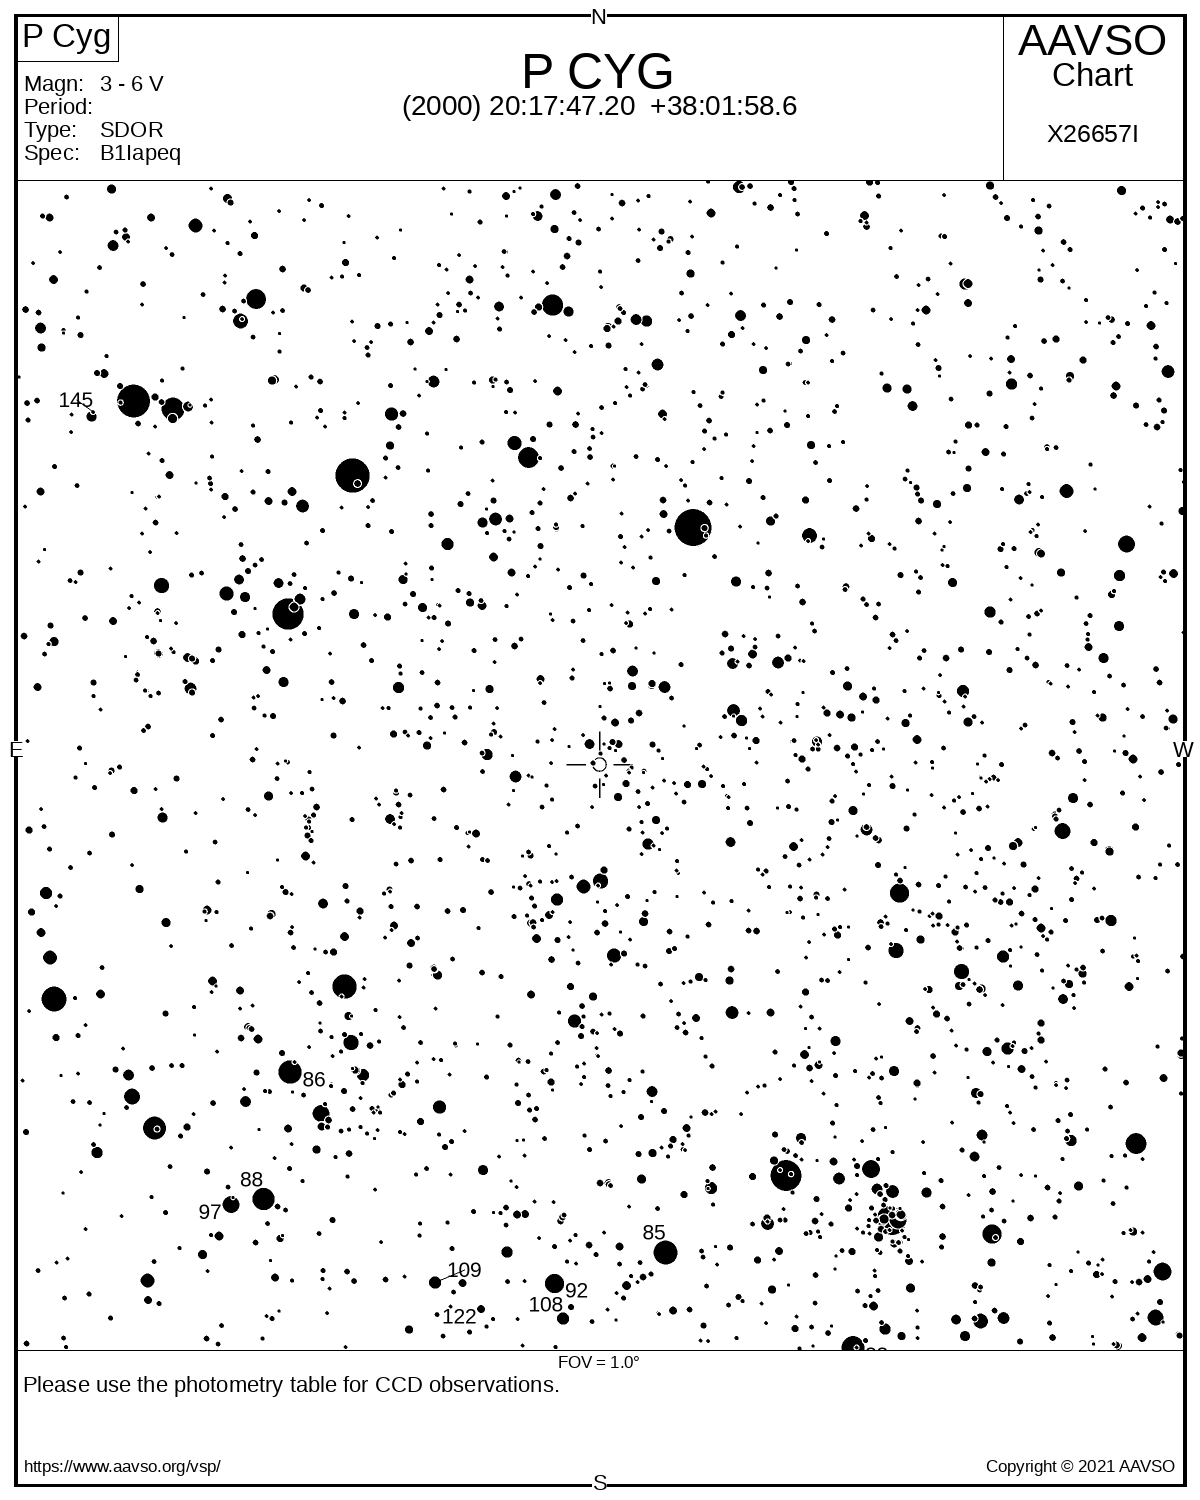 Eine Karte zeigt die Umgebung des veränderlichen Sterns P Cygni mit schwarzen Sternen auf weißem Hintergrund.